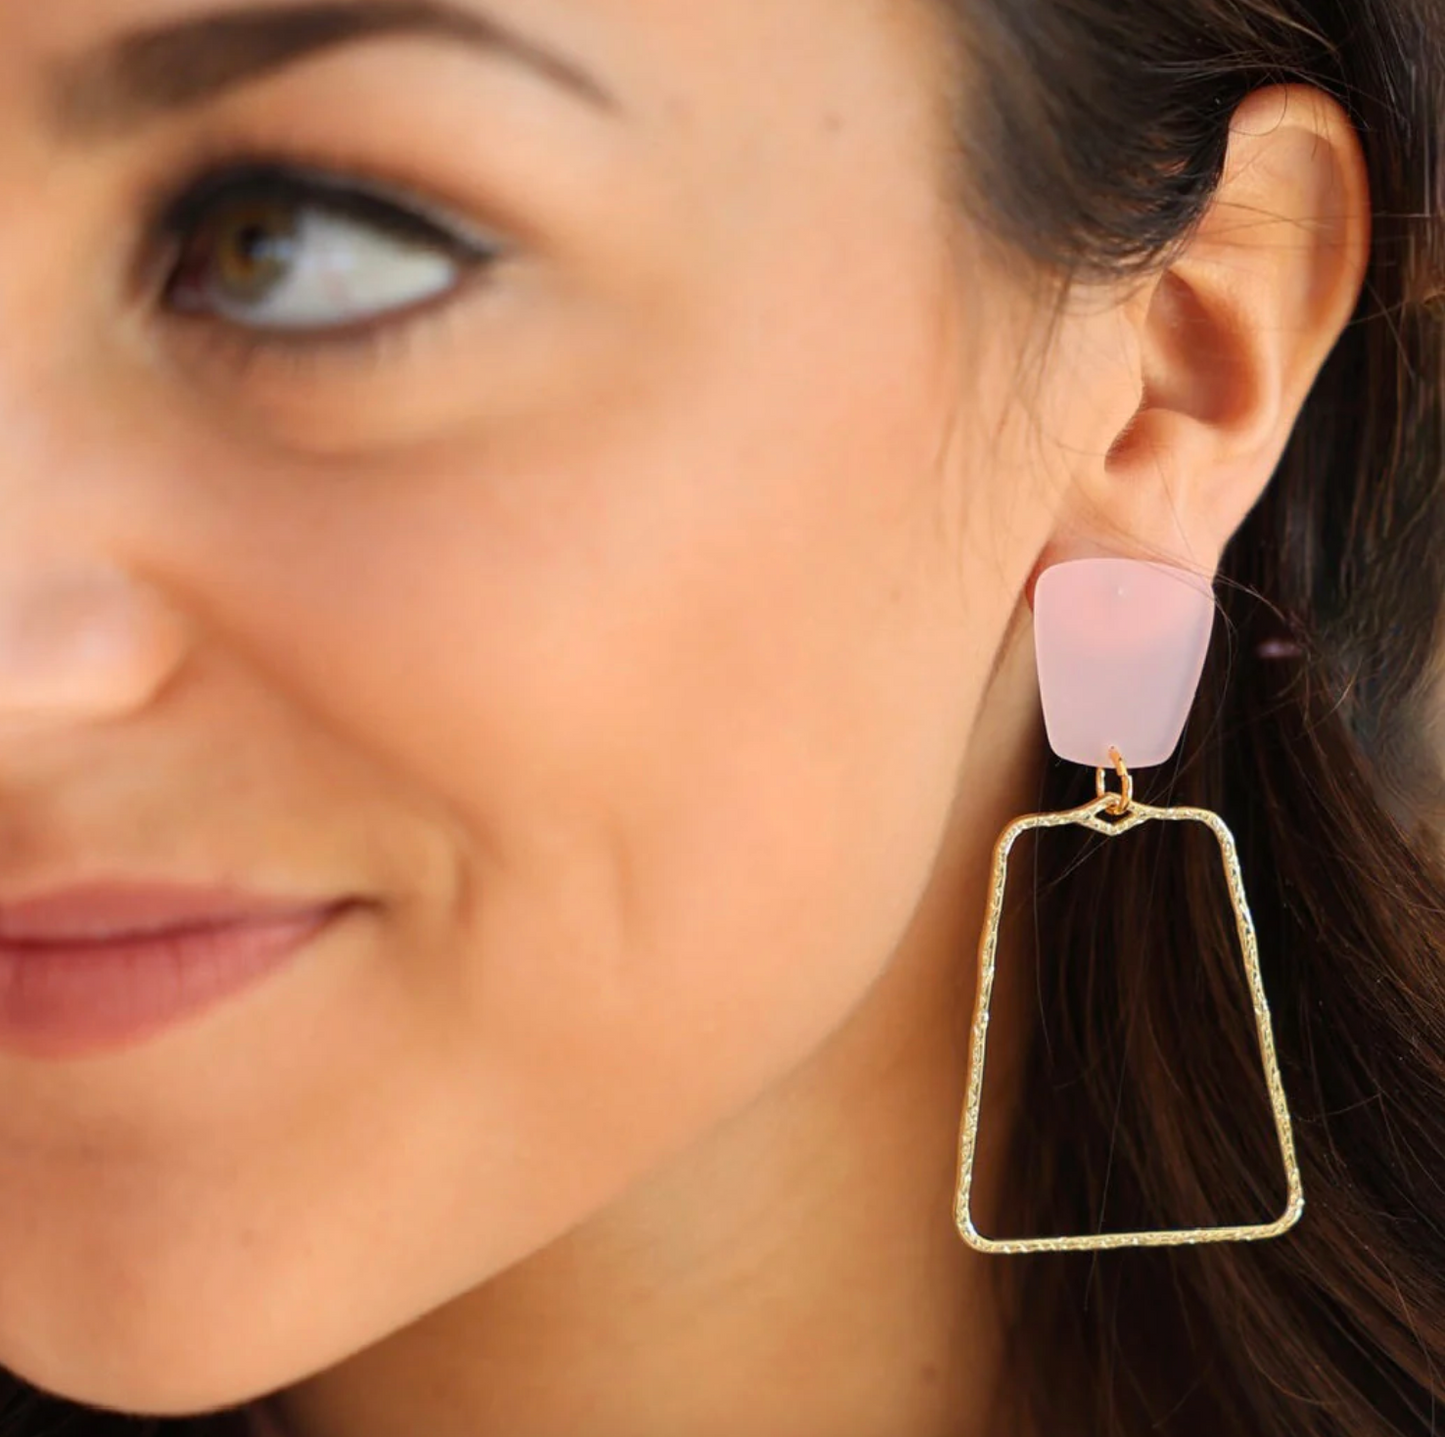 Kaelyn Gold Earring Earrings in Baby Pink at Wrapsody